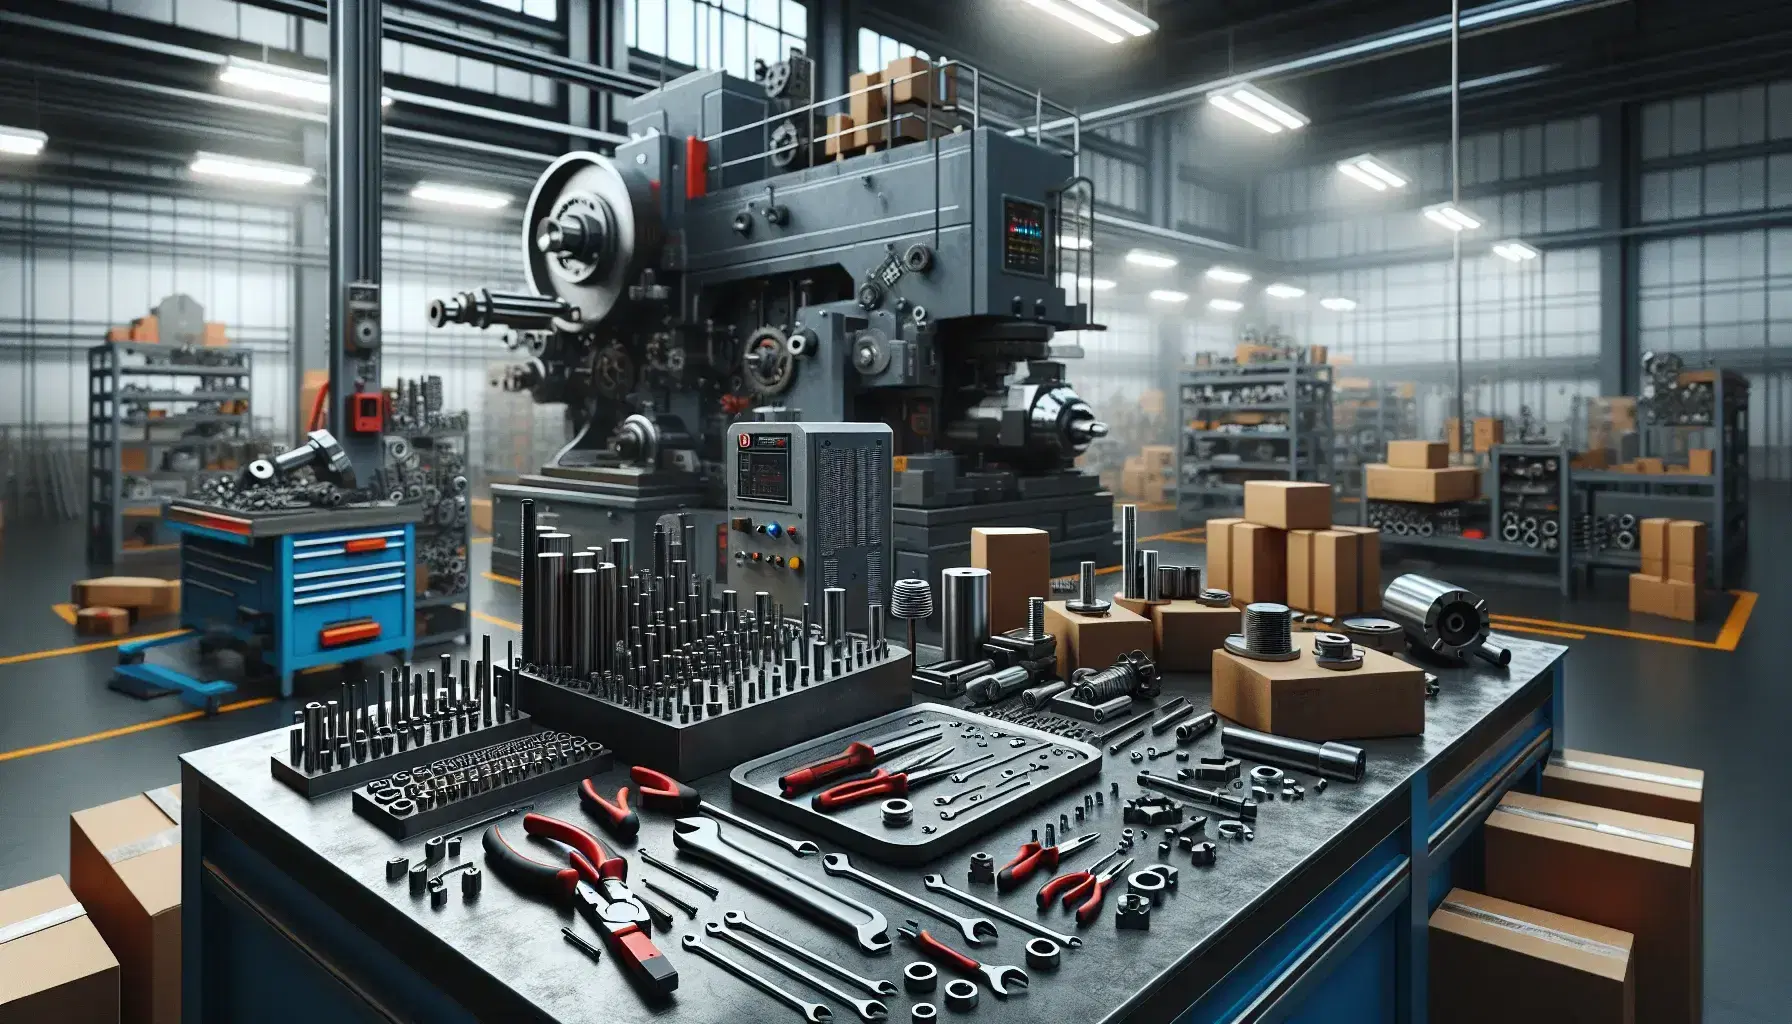 Taller de manufactura con banco de trabajo metálico y herramientas variadas, junto a una máquina industrial azul oscura y estanterías con cajas y contenedores.